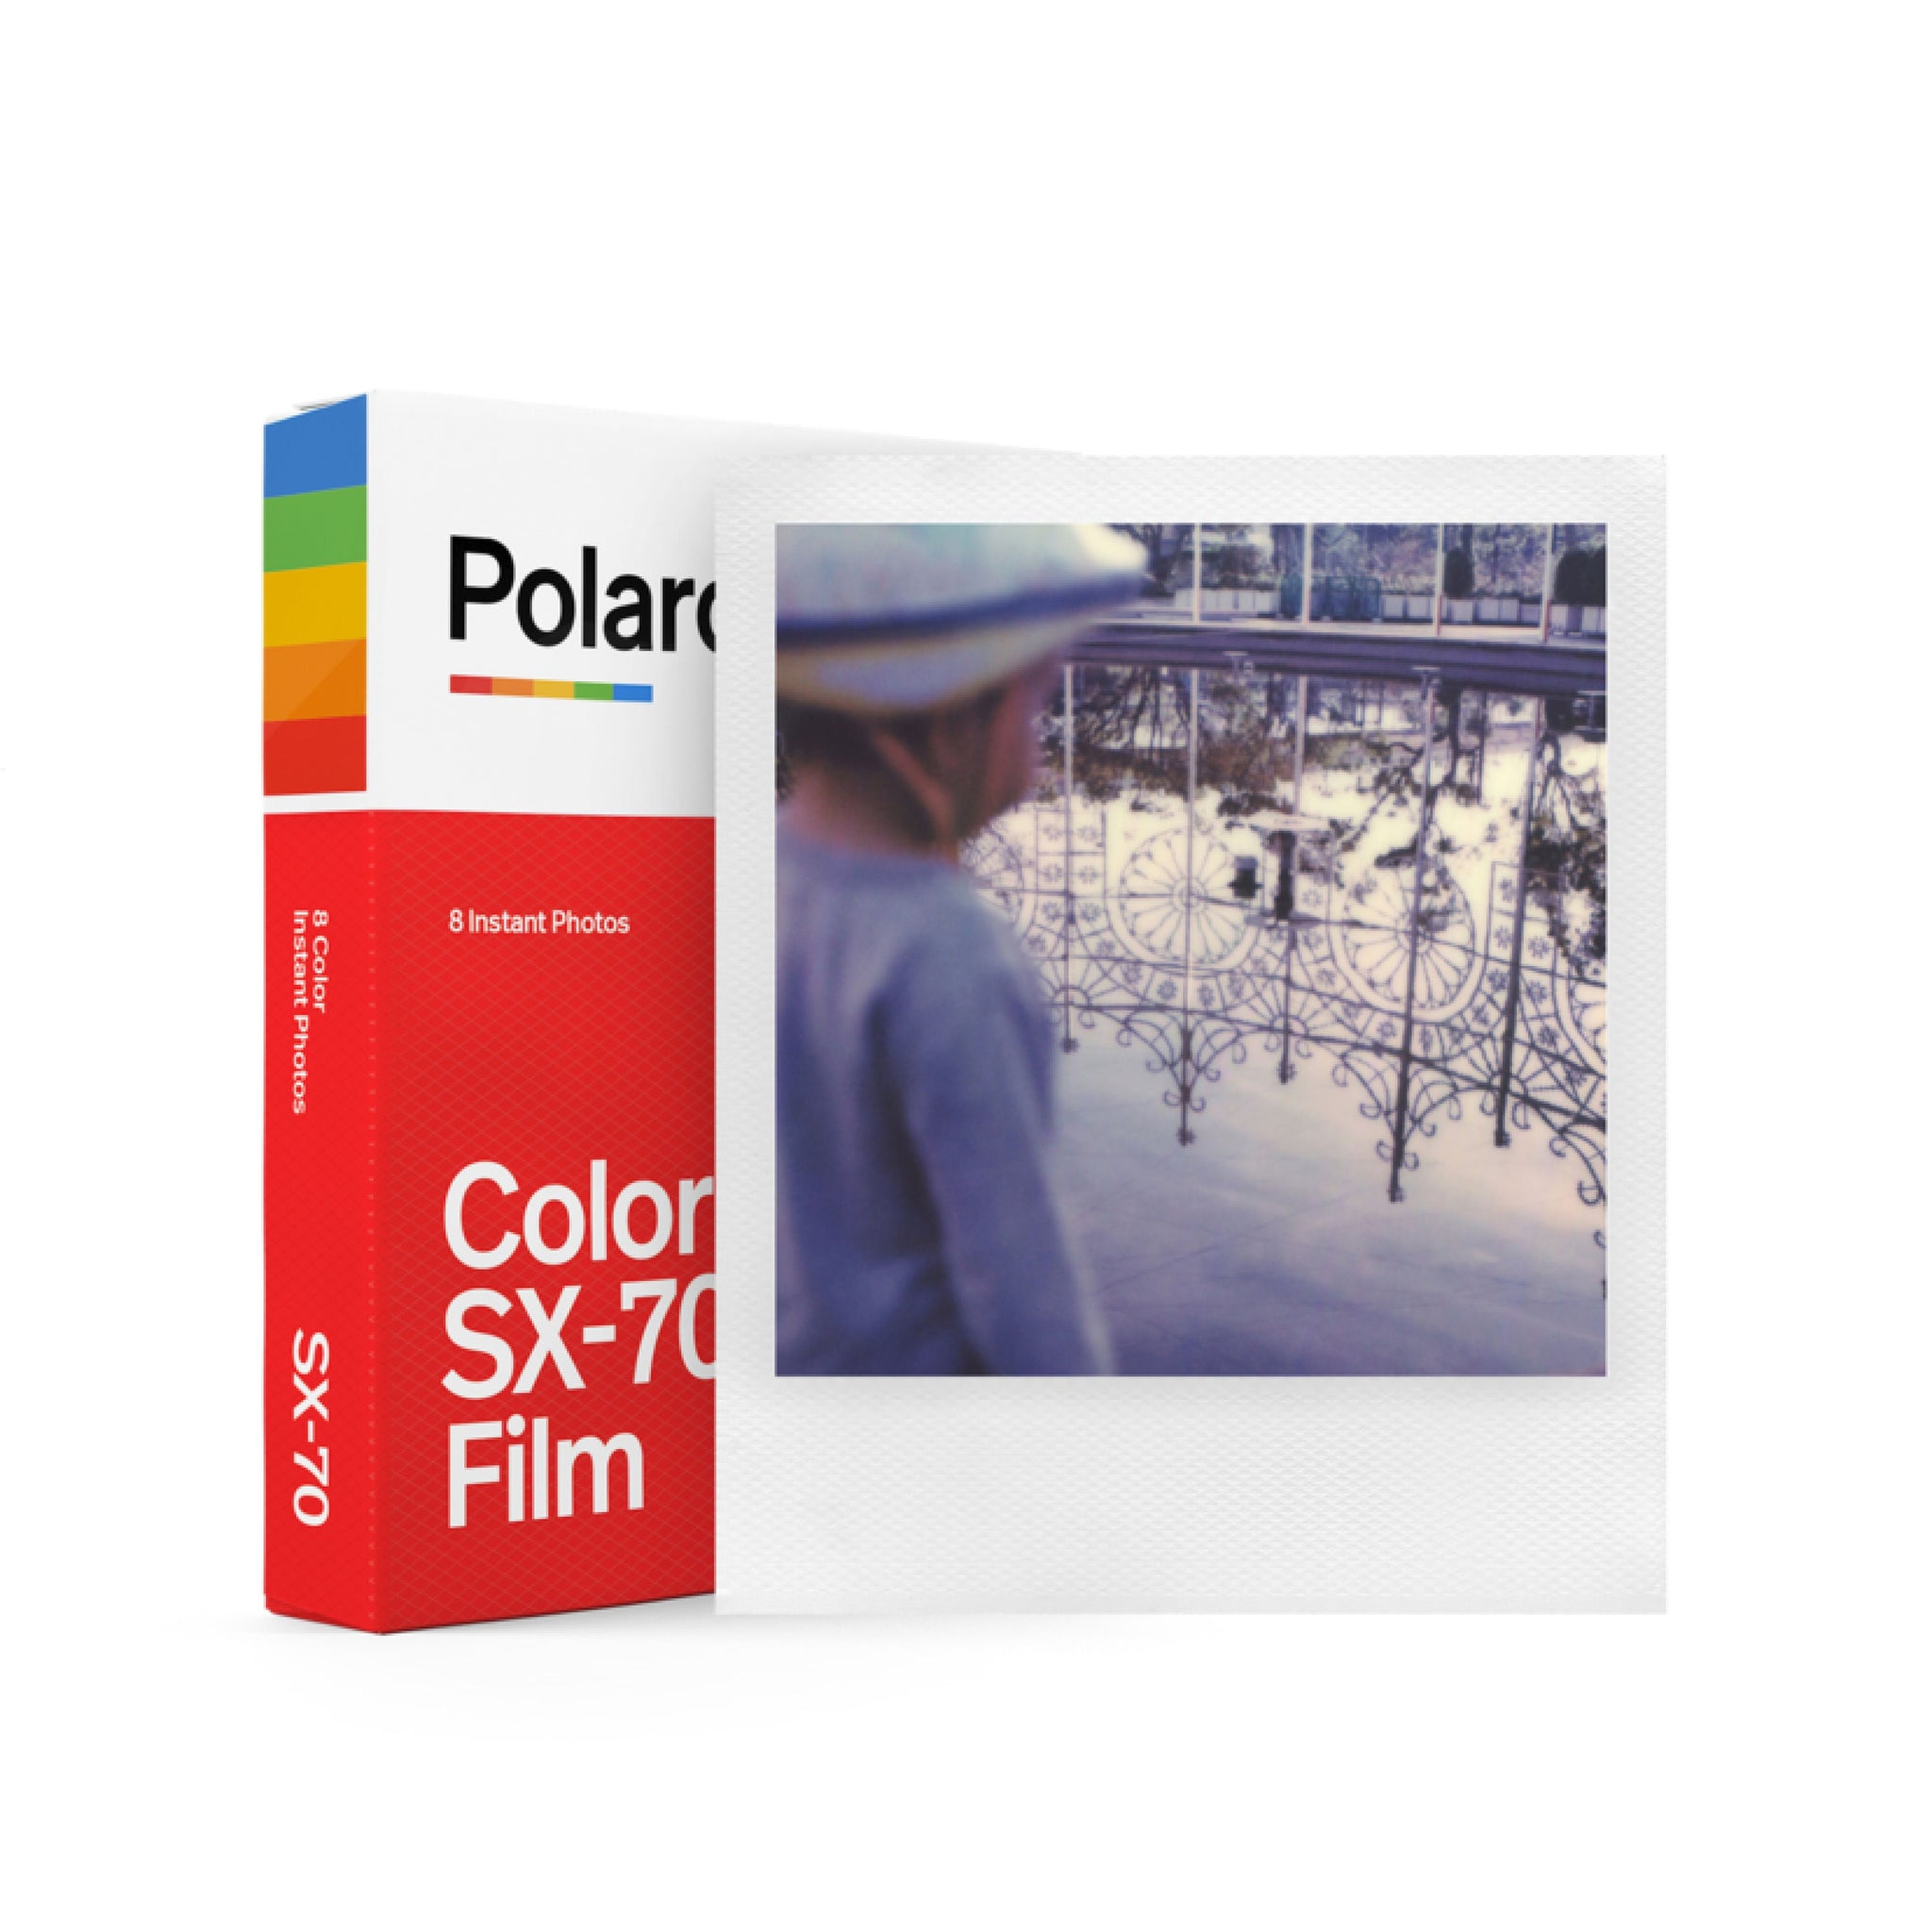 Polaroid 600 vs SX-70 Color Film Showdown - Which is the right